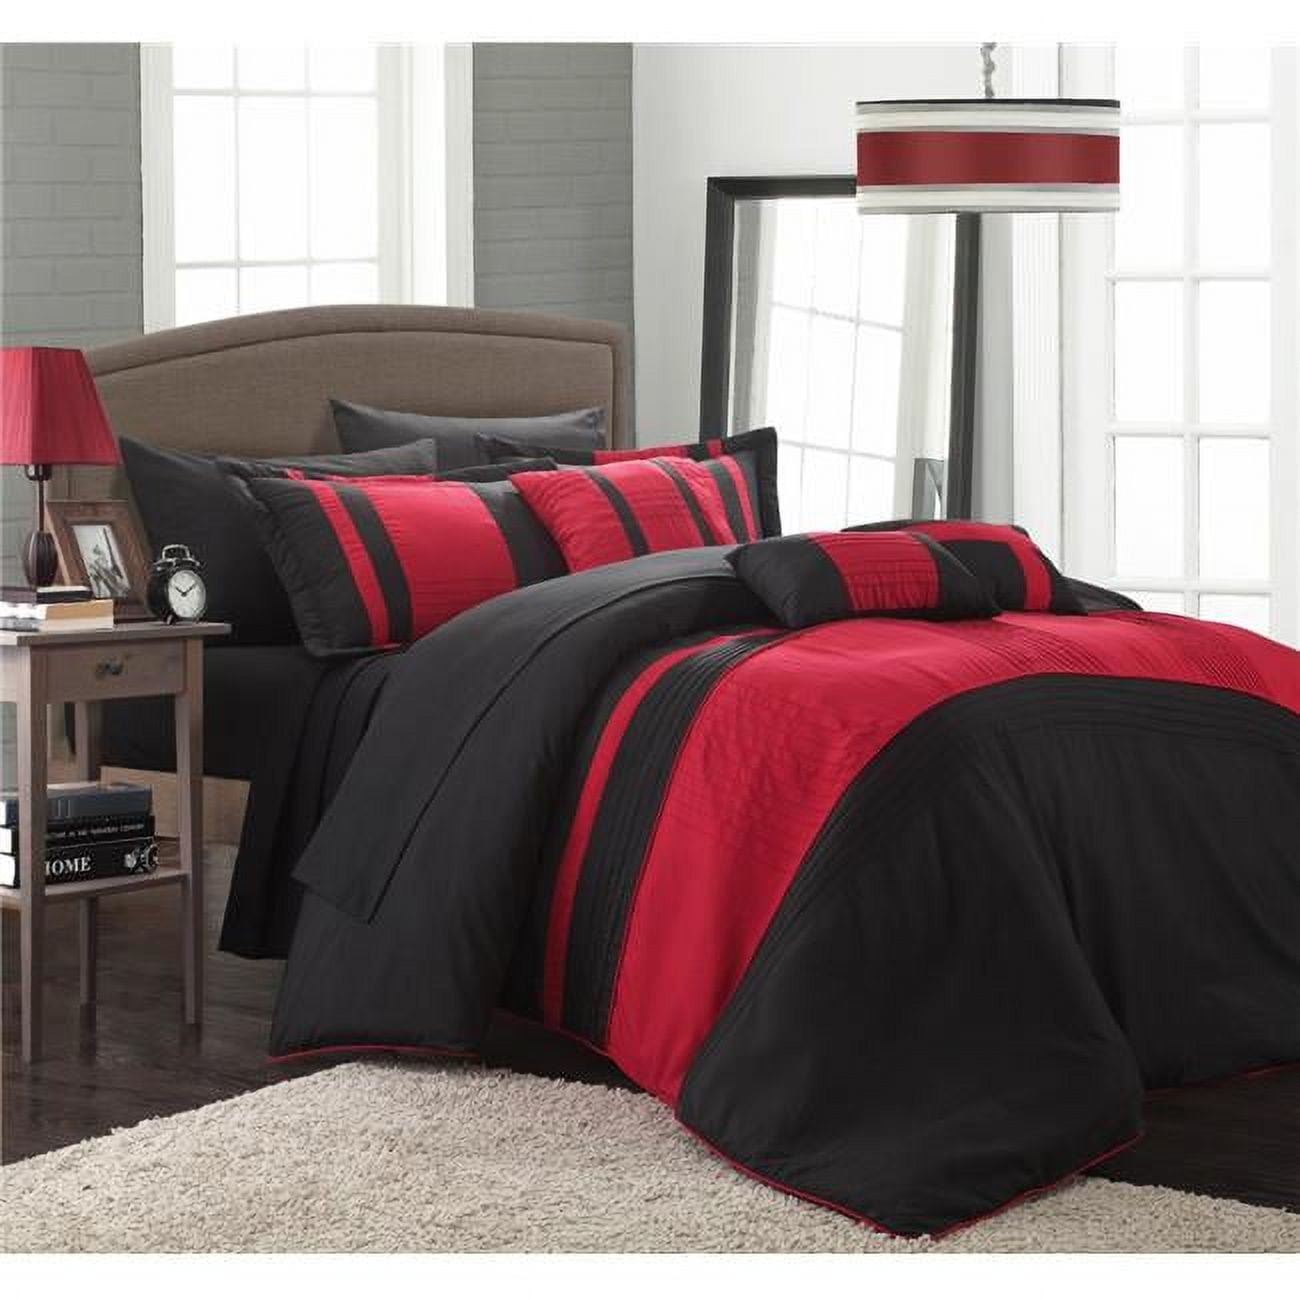 Cs0865-415-us Siesta Color Block Comforter Set With Sheets - Red - Queen - 10 Piece